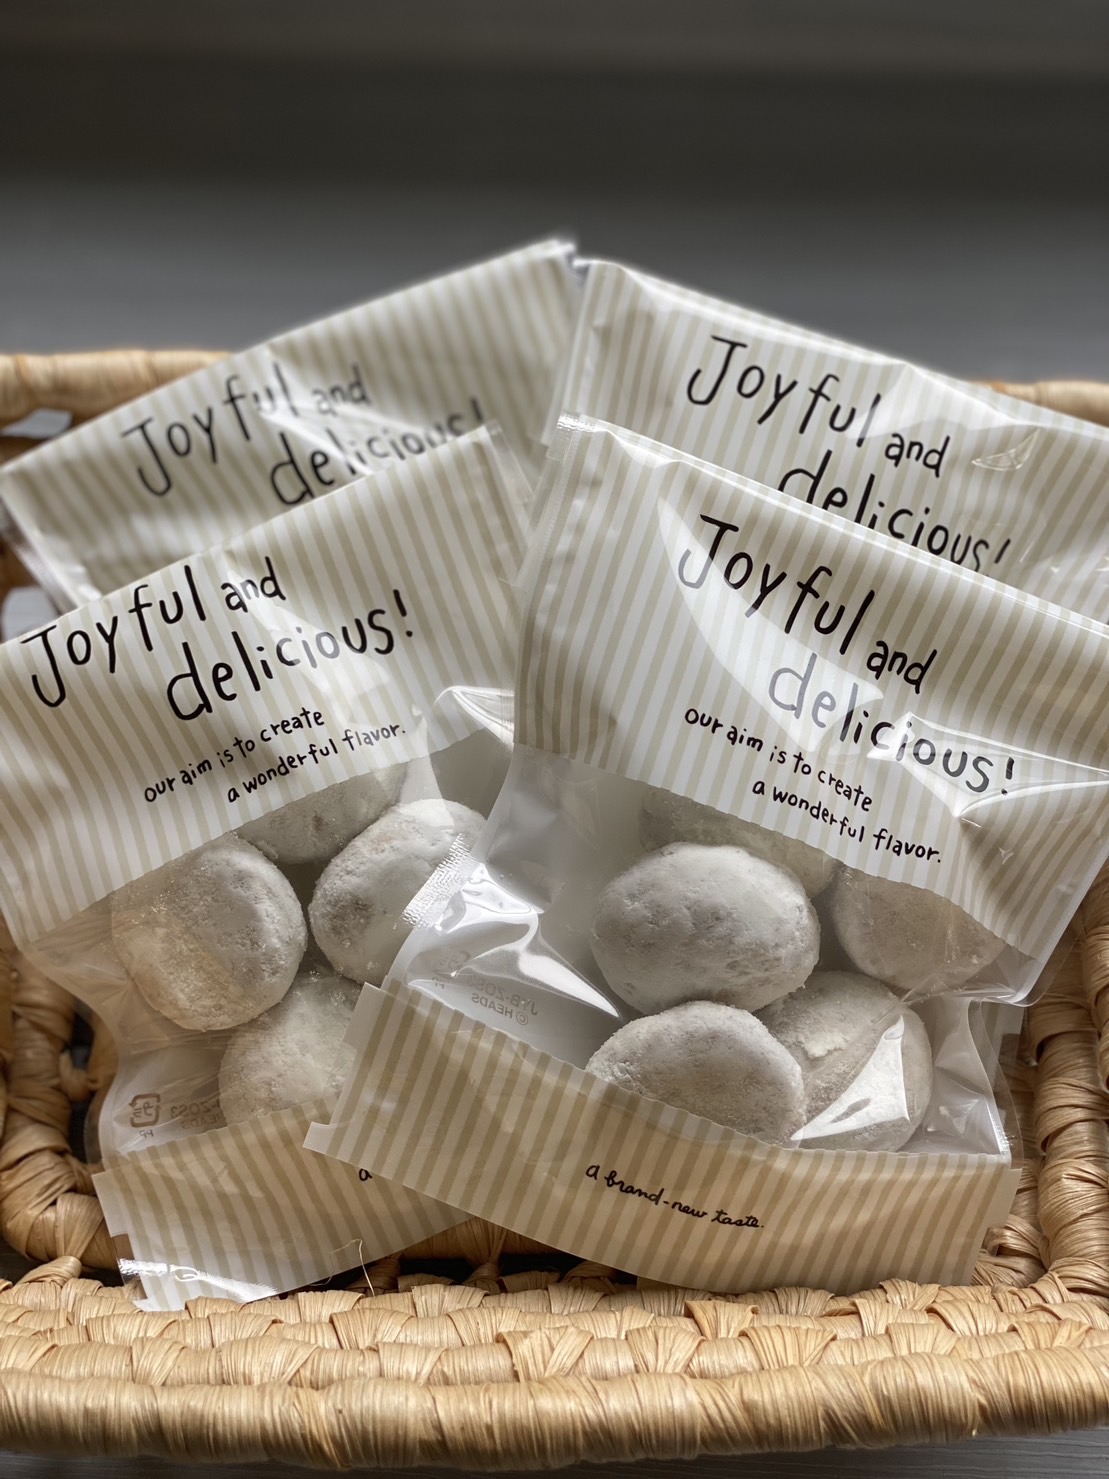 白くて丸い焼き菓子「スノーボール」が数個ずつ、「Joyful and delicious!」と書かれた可愛い袋に入っている